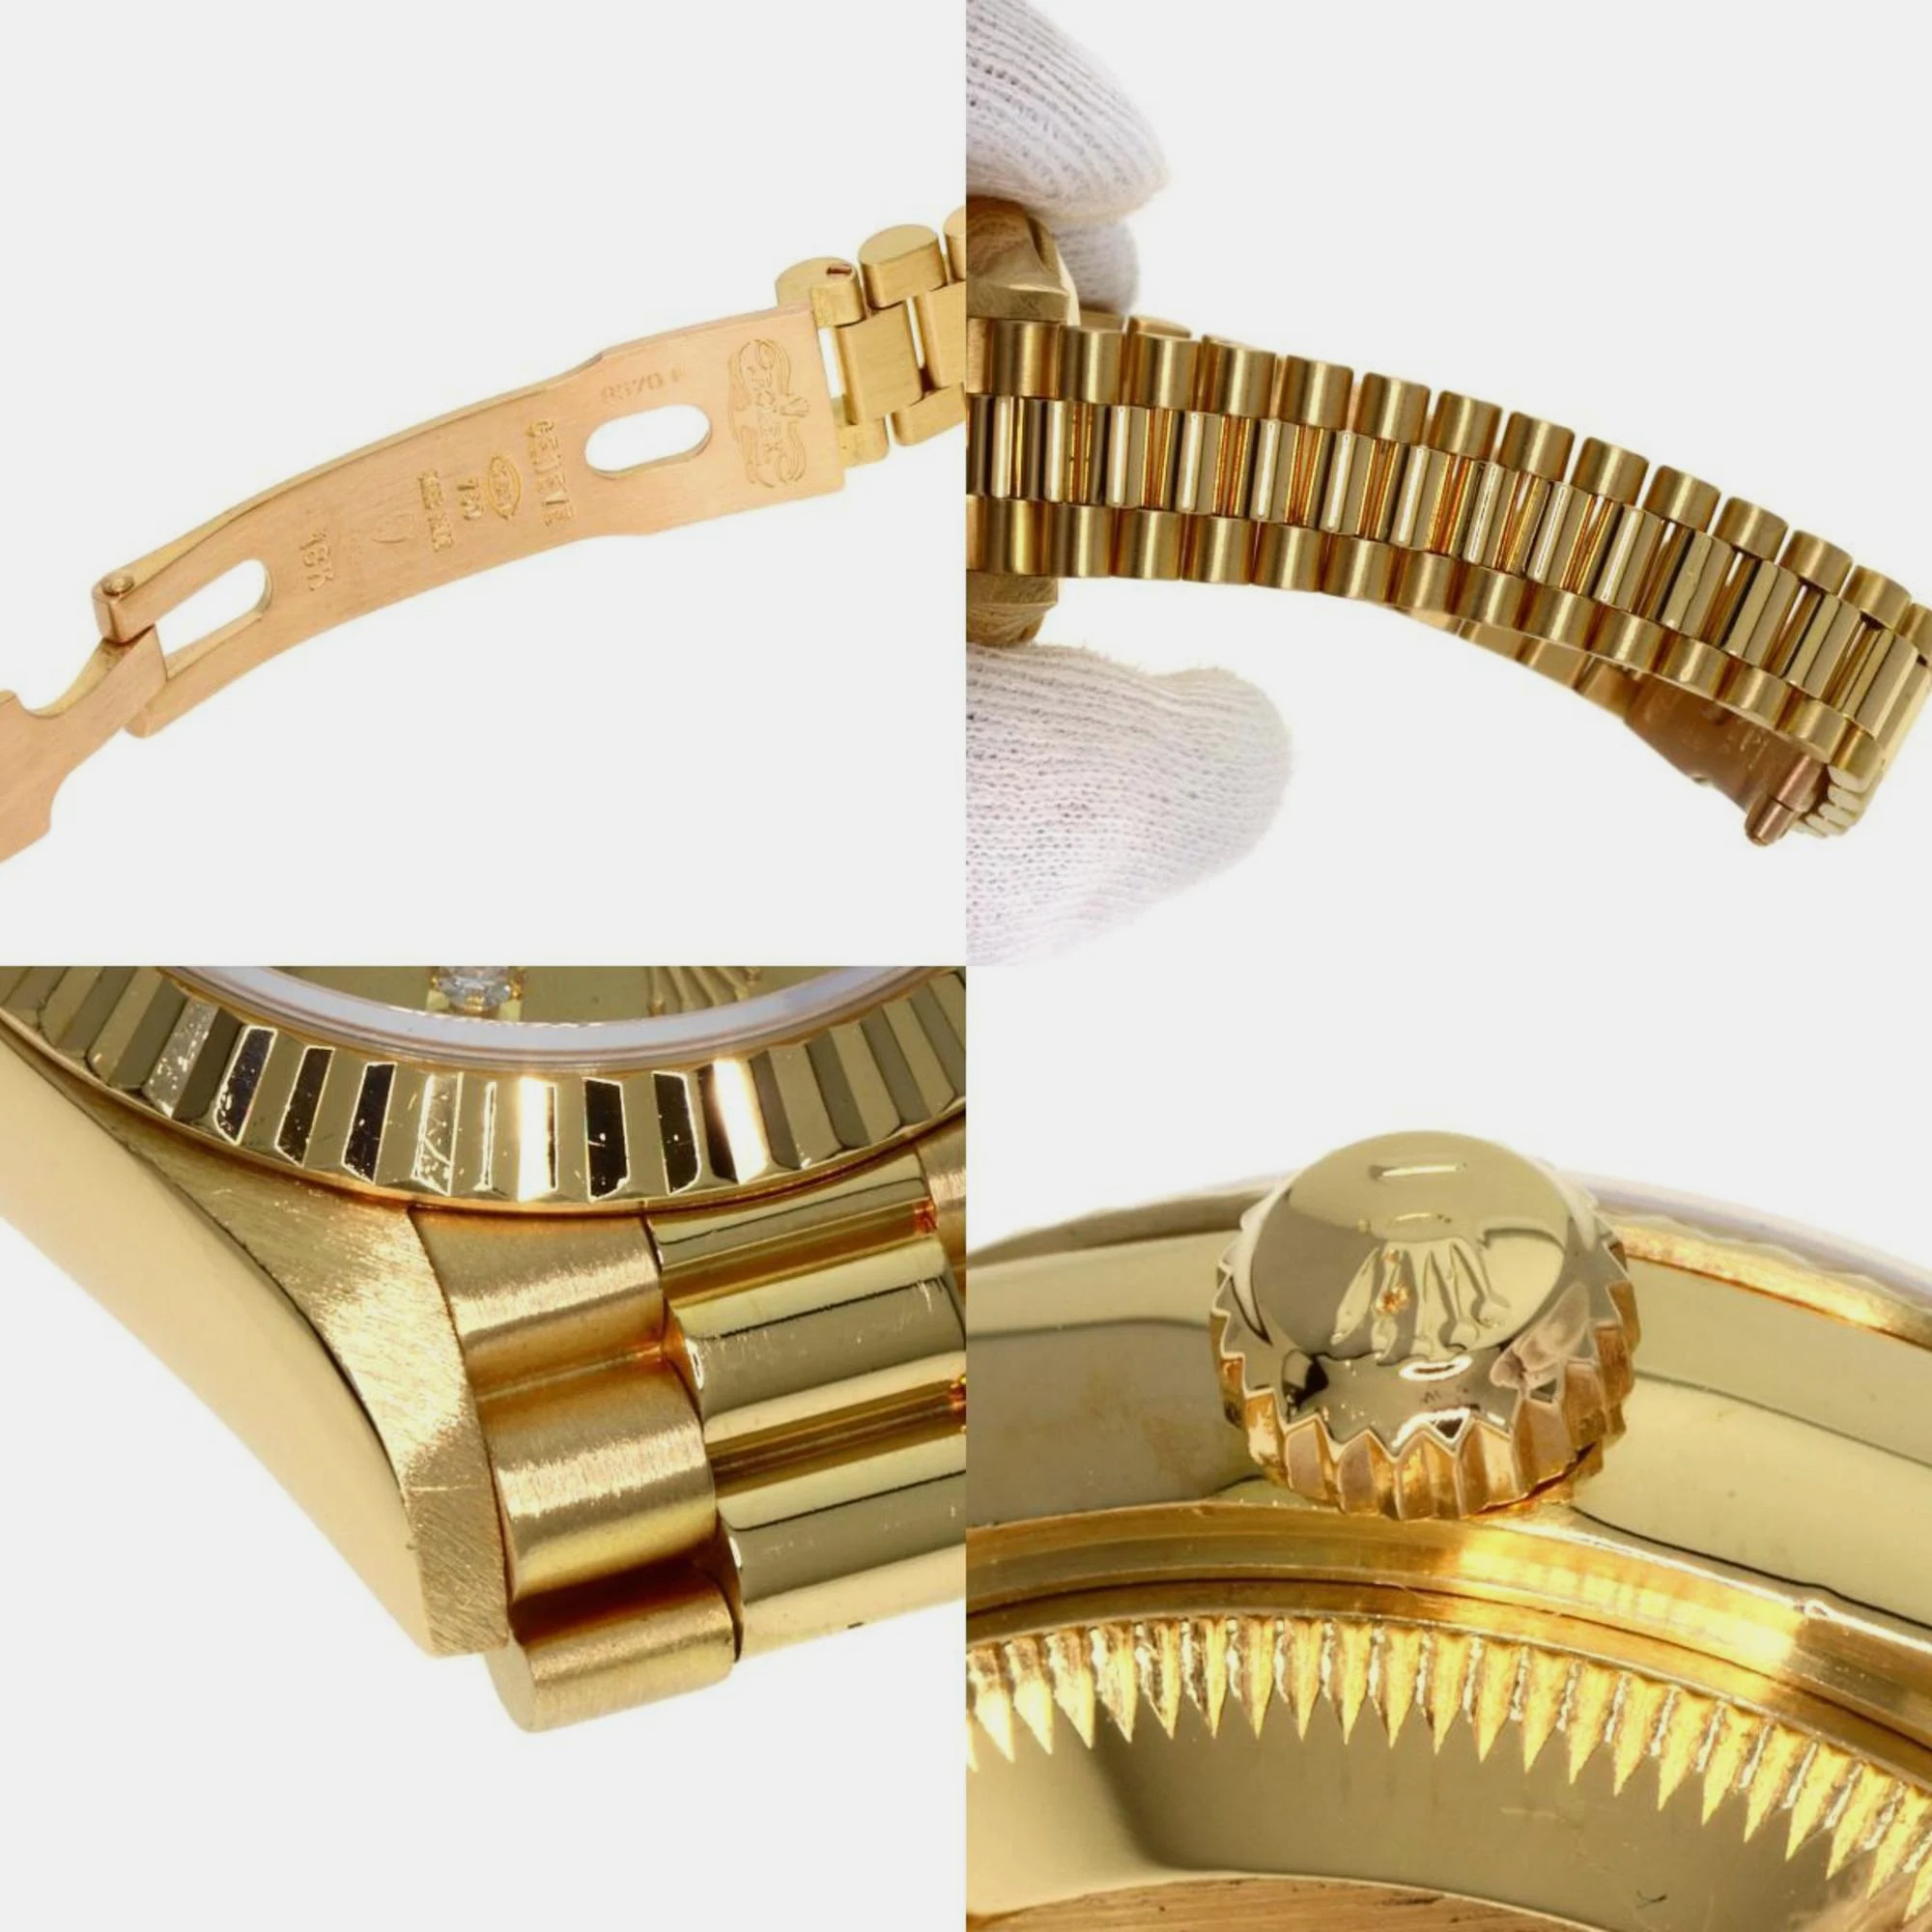 Rolex Champagne Diamond 18k Yellow Gold Datejust 69178 Automatic Women's Wristwatch 26 Mm